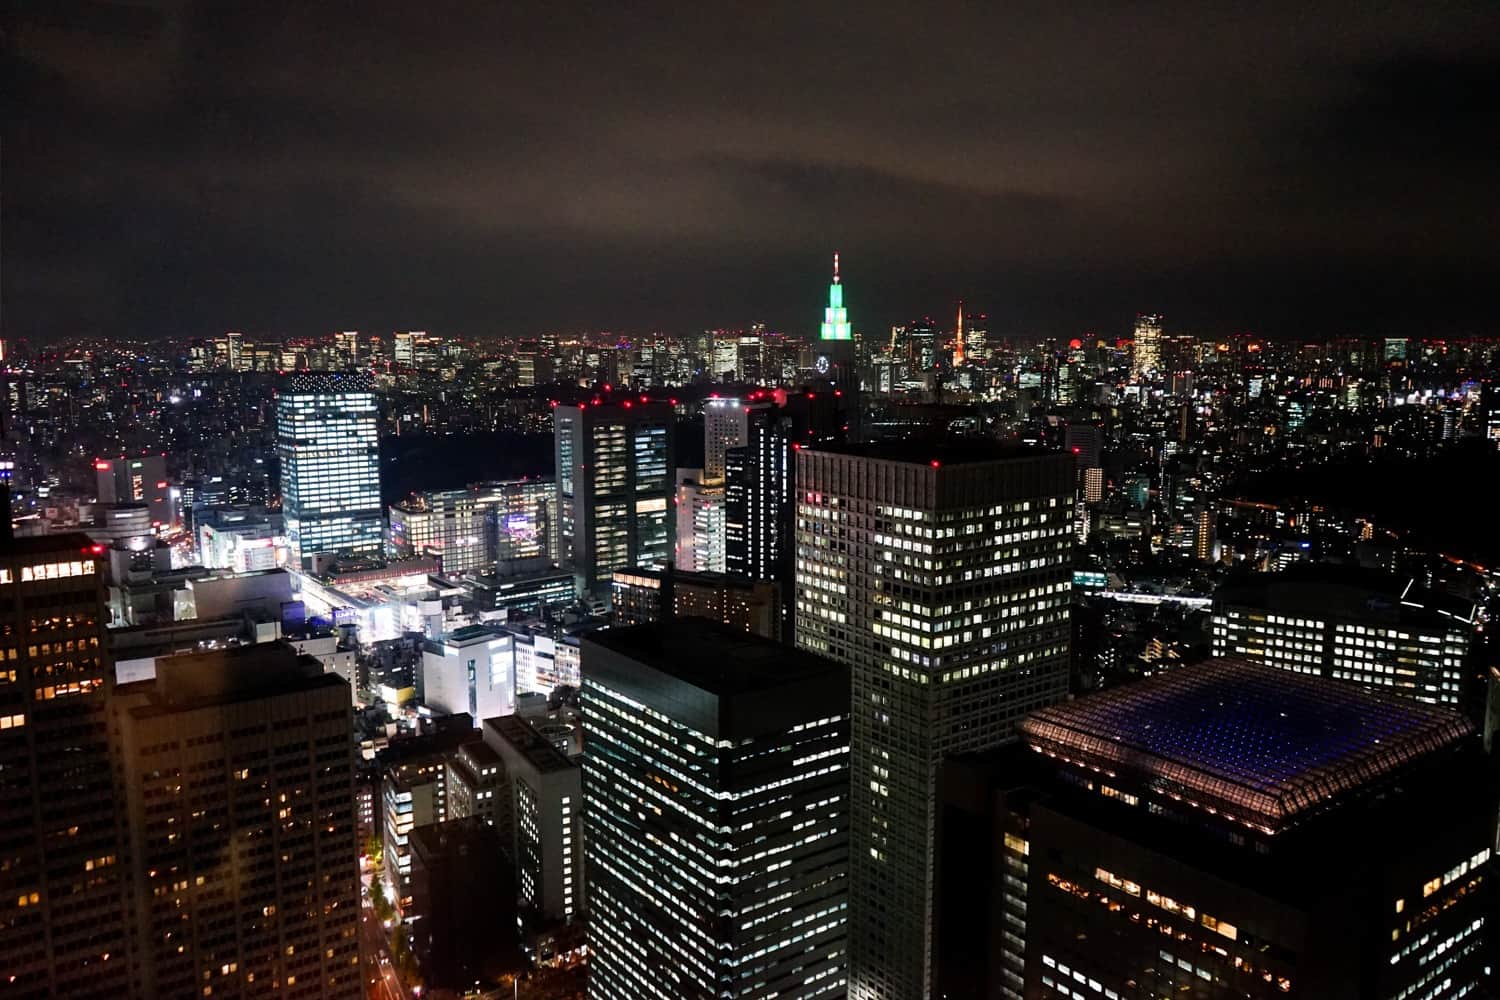 Views of Tokyo at night